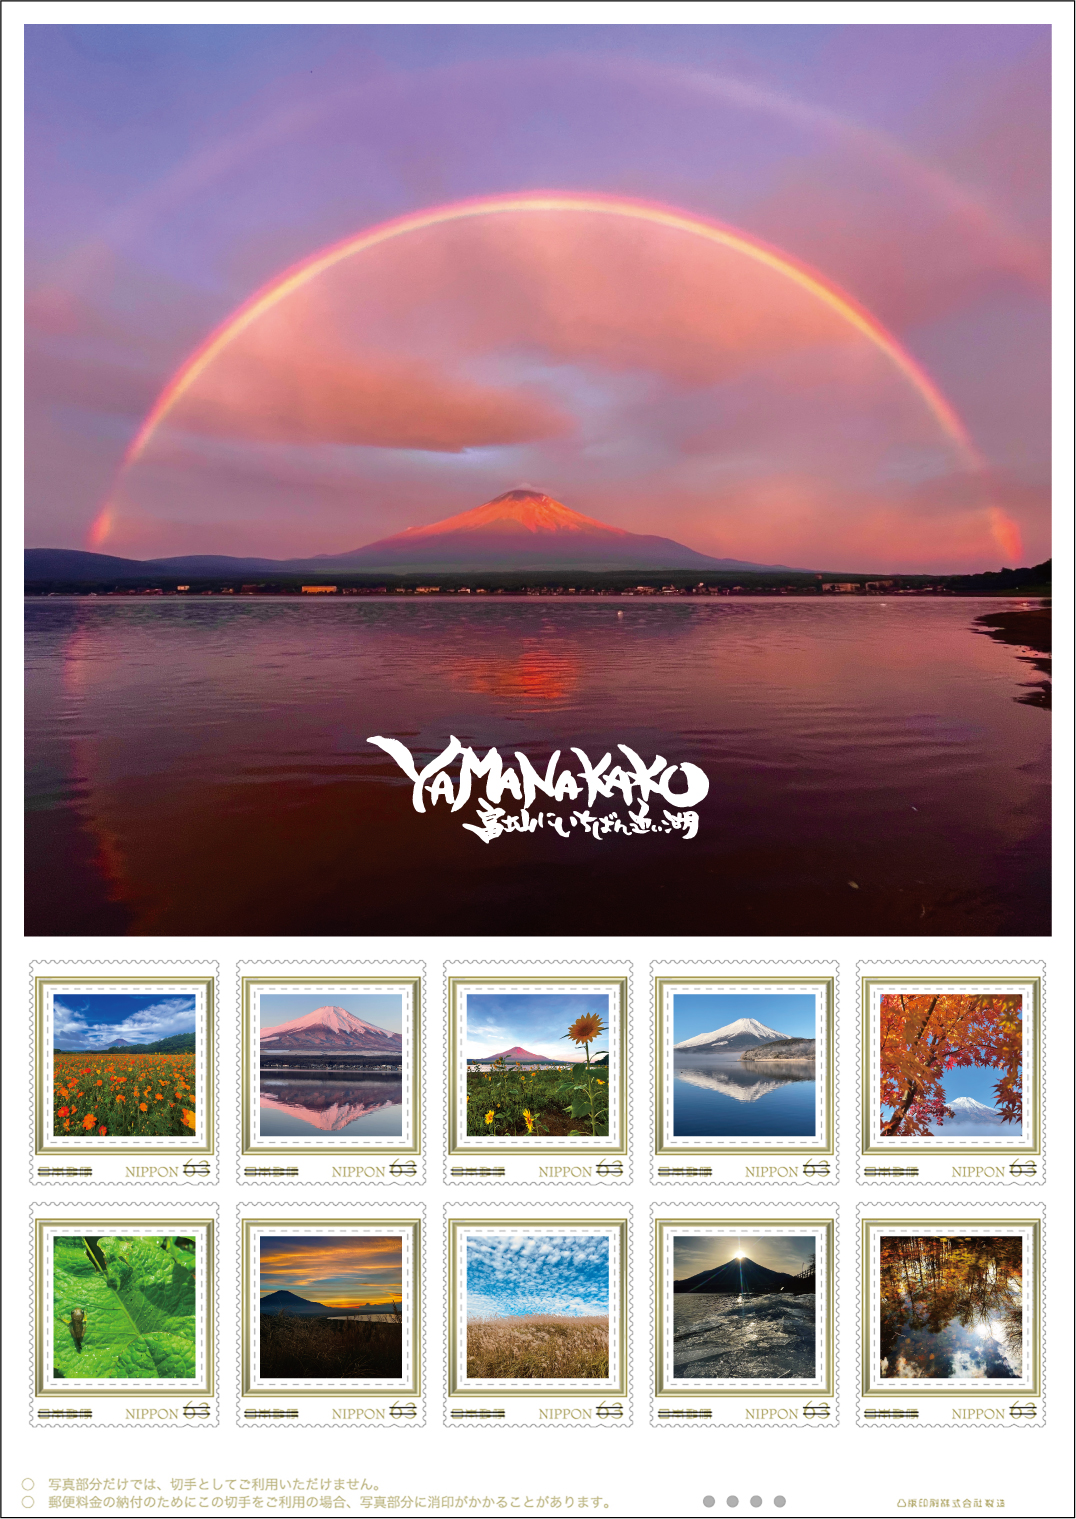 オリジナル フレーム切手「YAMANAKAKO富士山にいちばん近い湖」の販売開始と贈呈式の開催